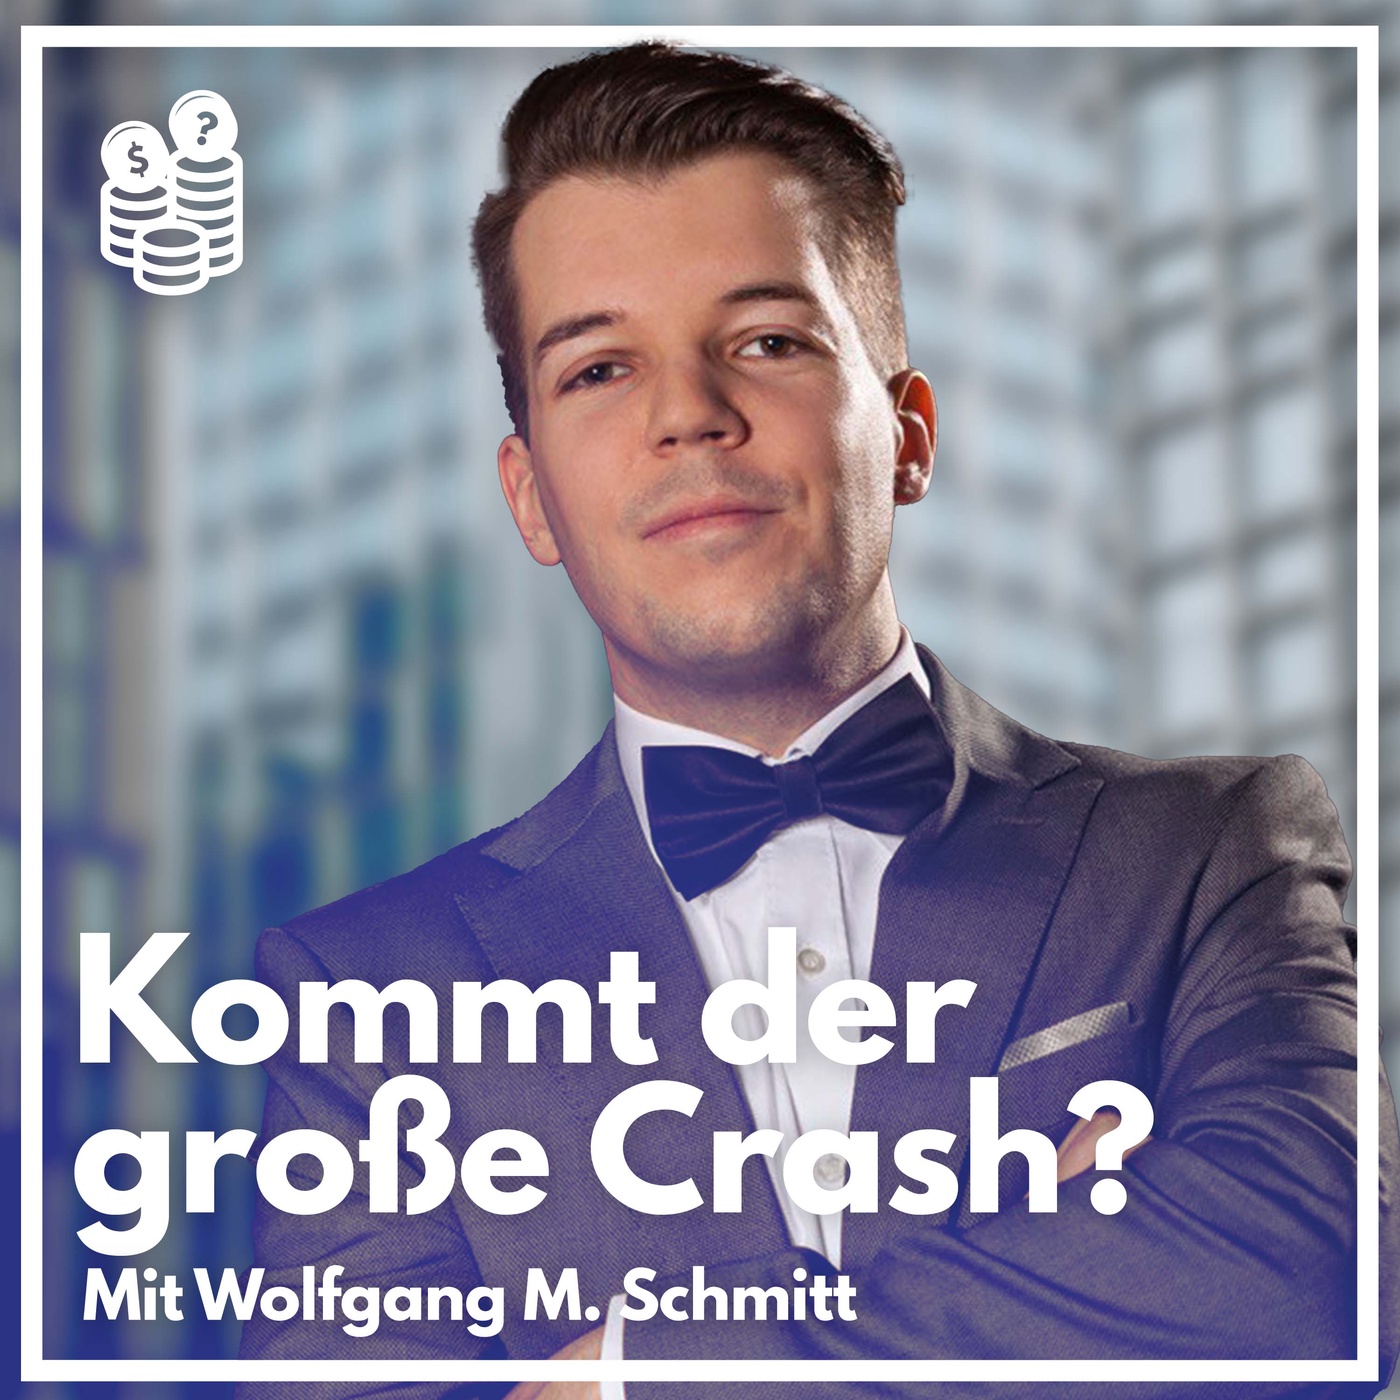 Die Ideologie der Crashpropheten | Mit Wolfgang M. Schmitt